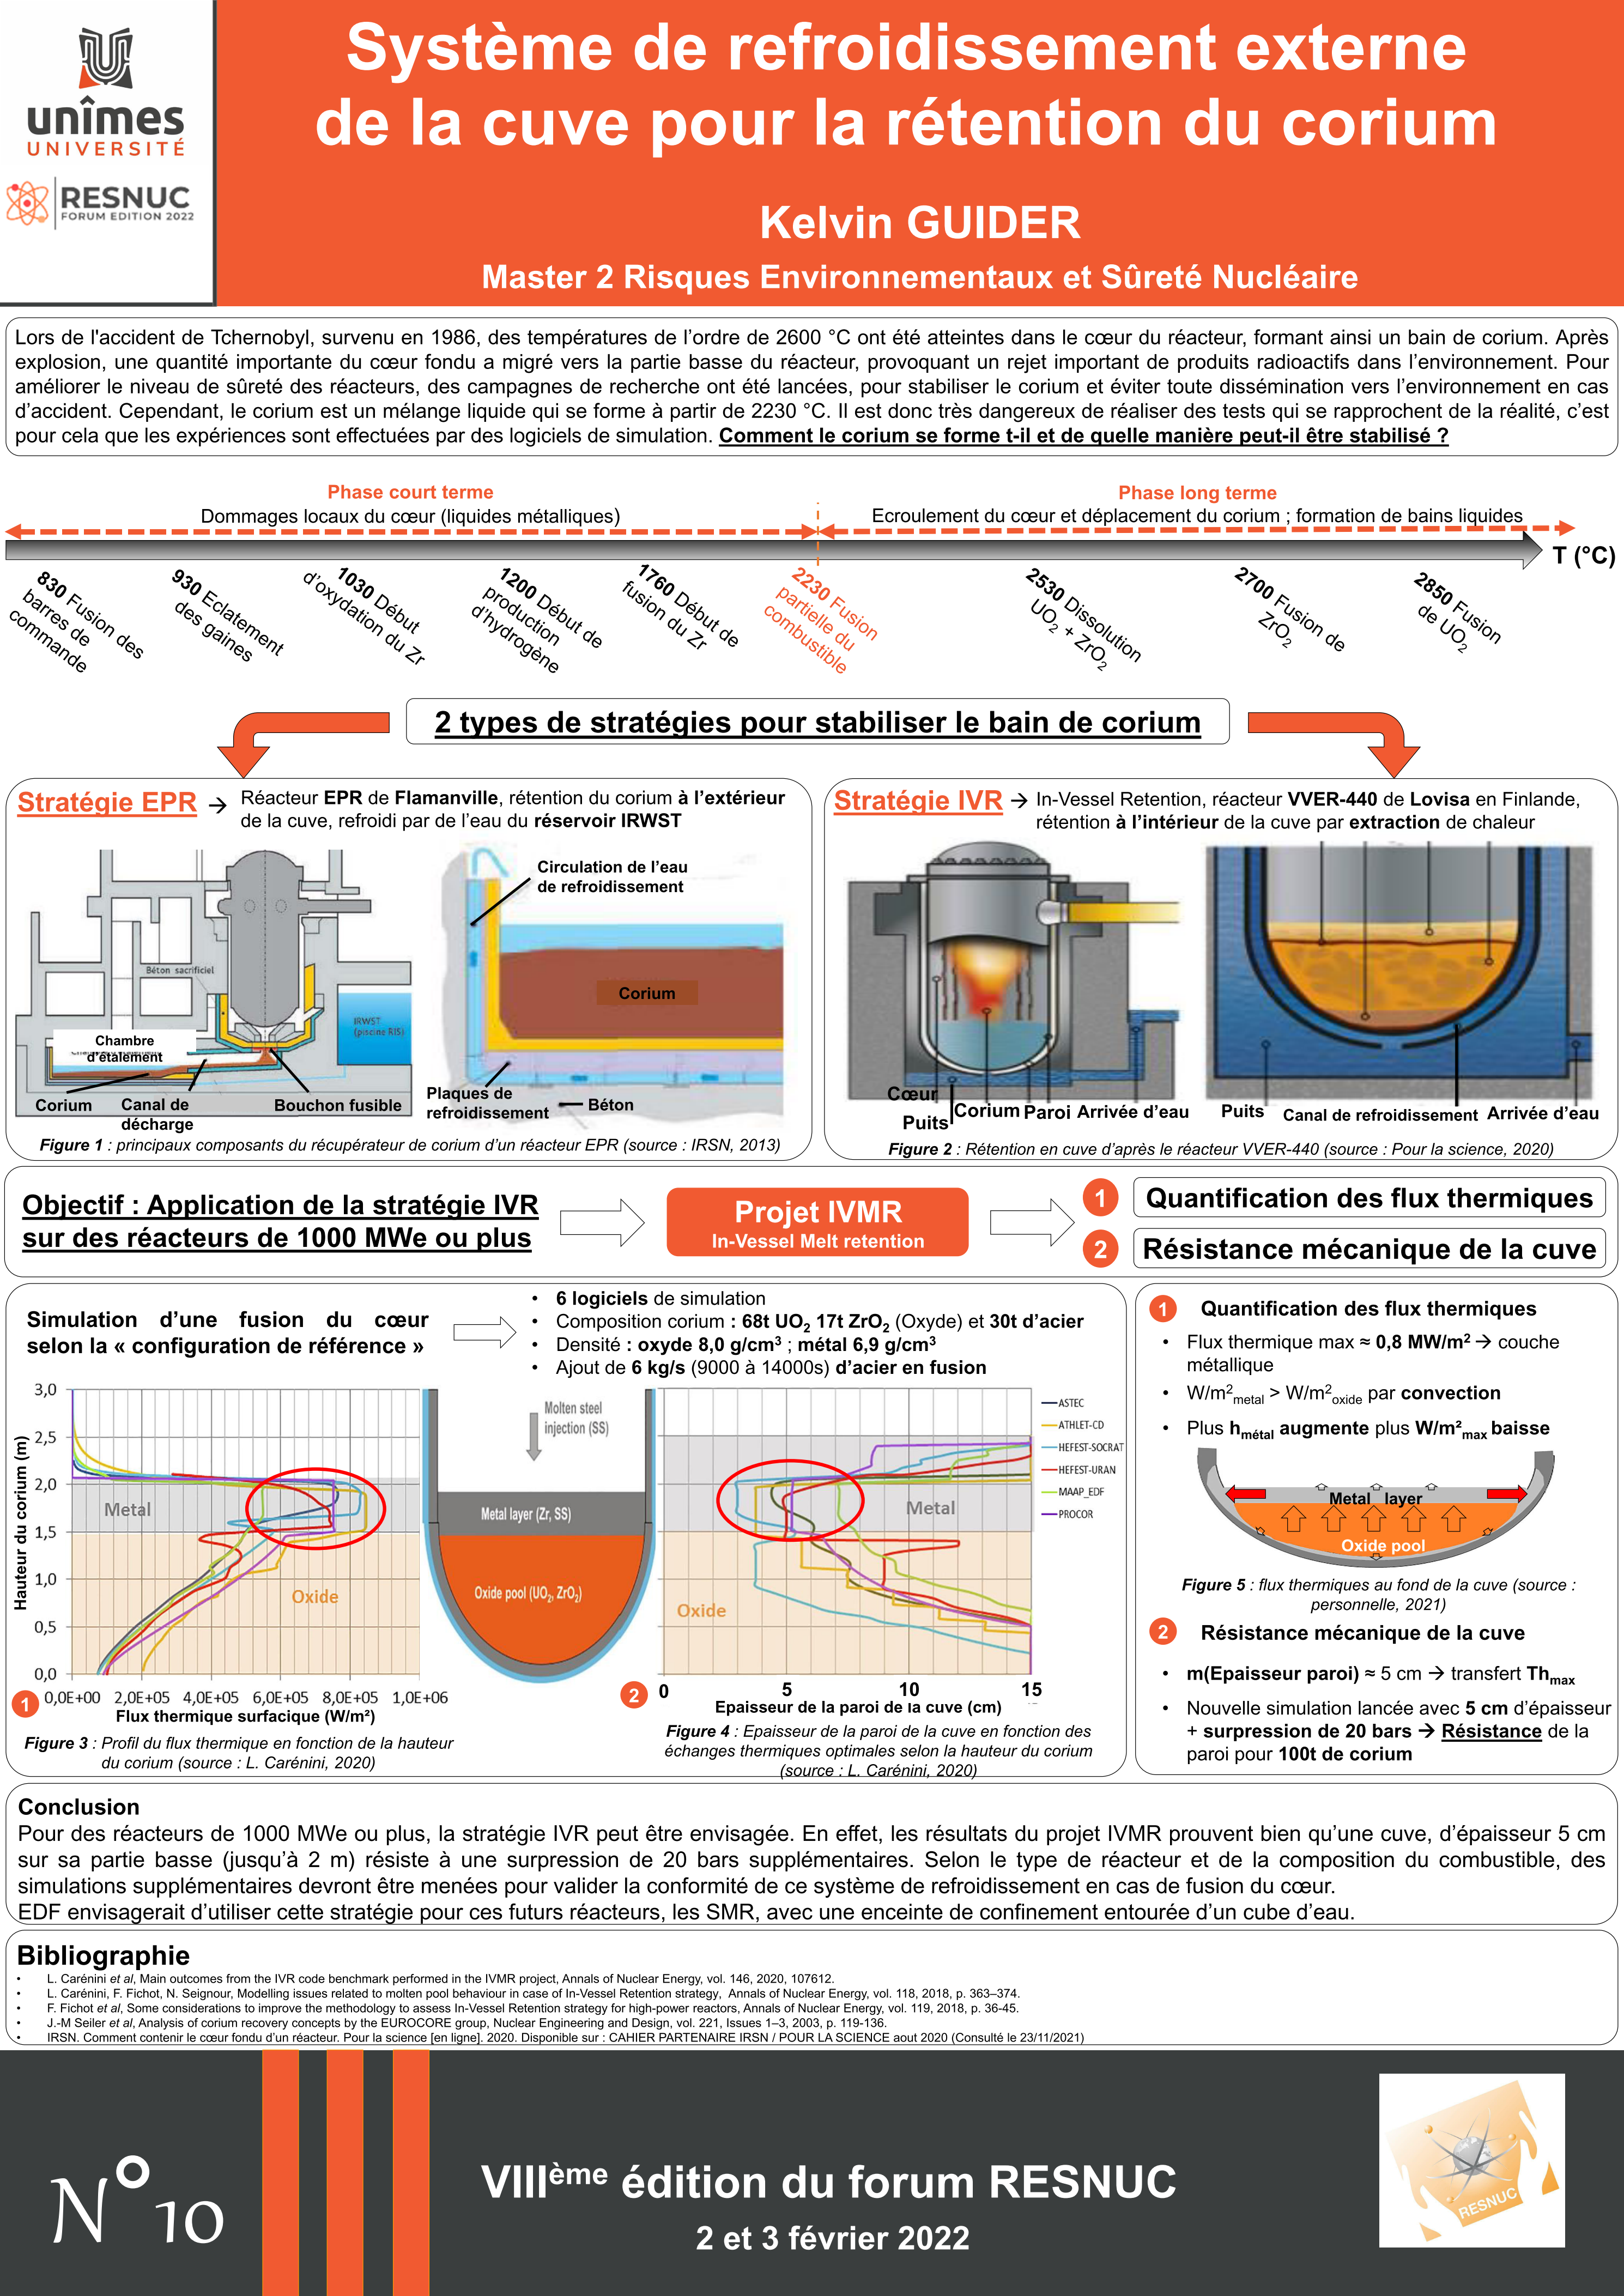 Poster #10 : Système de refroidissement externe de la cuve pour la rétention du corium